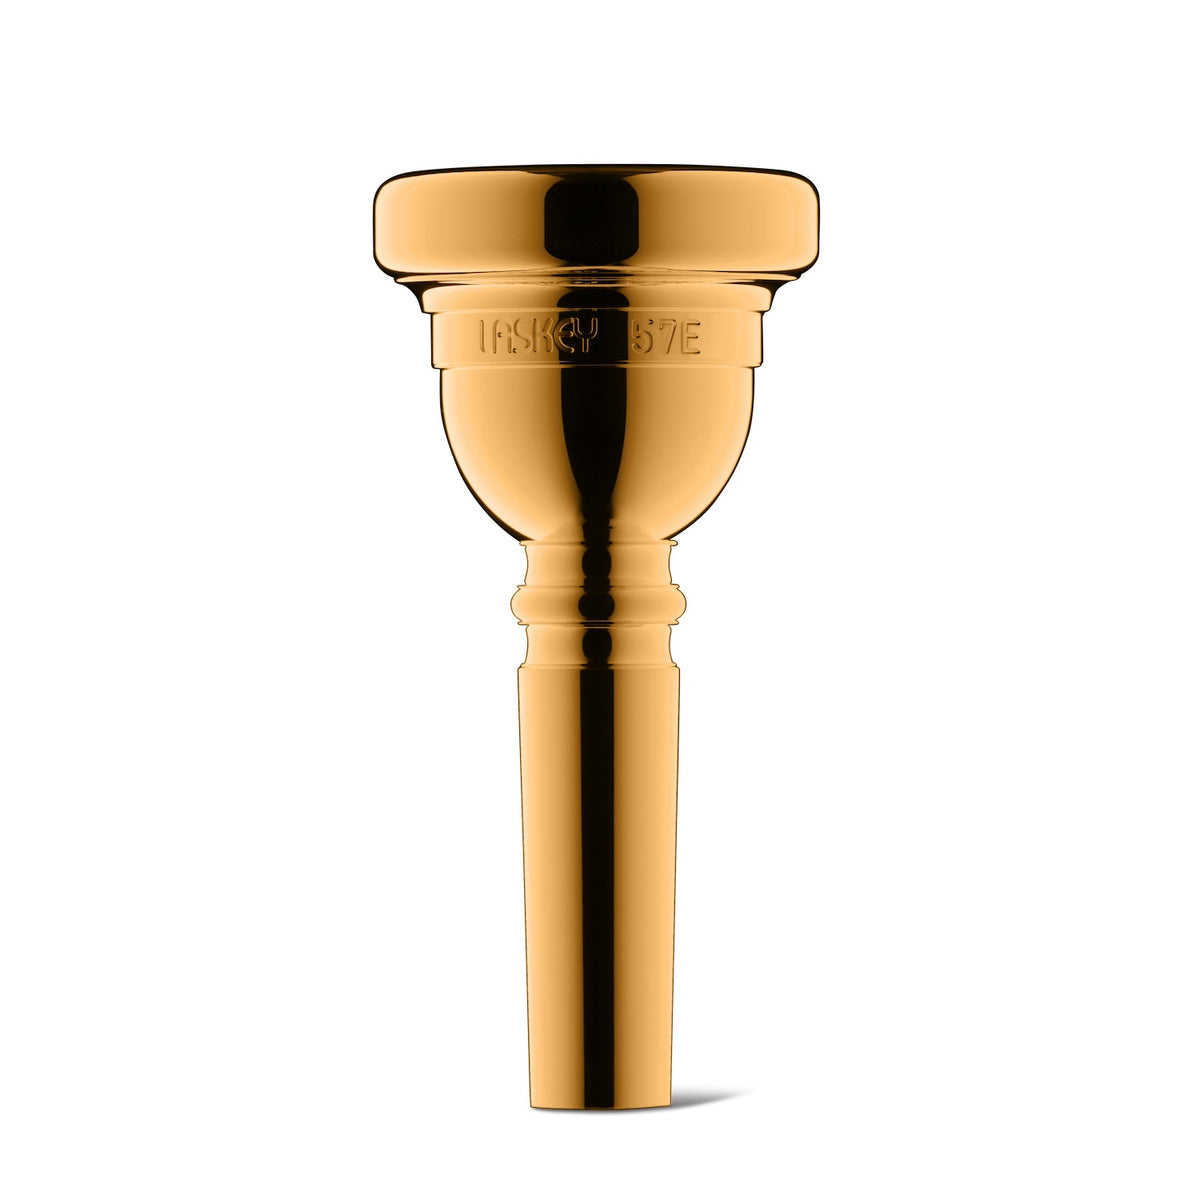 laskey-euphonium-mouthpiece-57E-gold